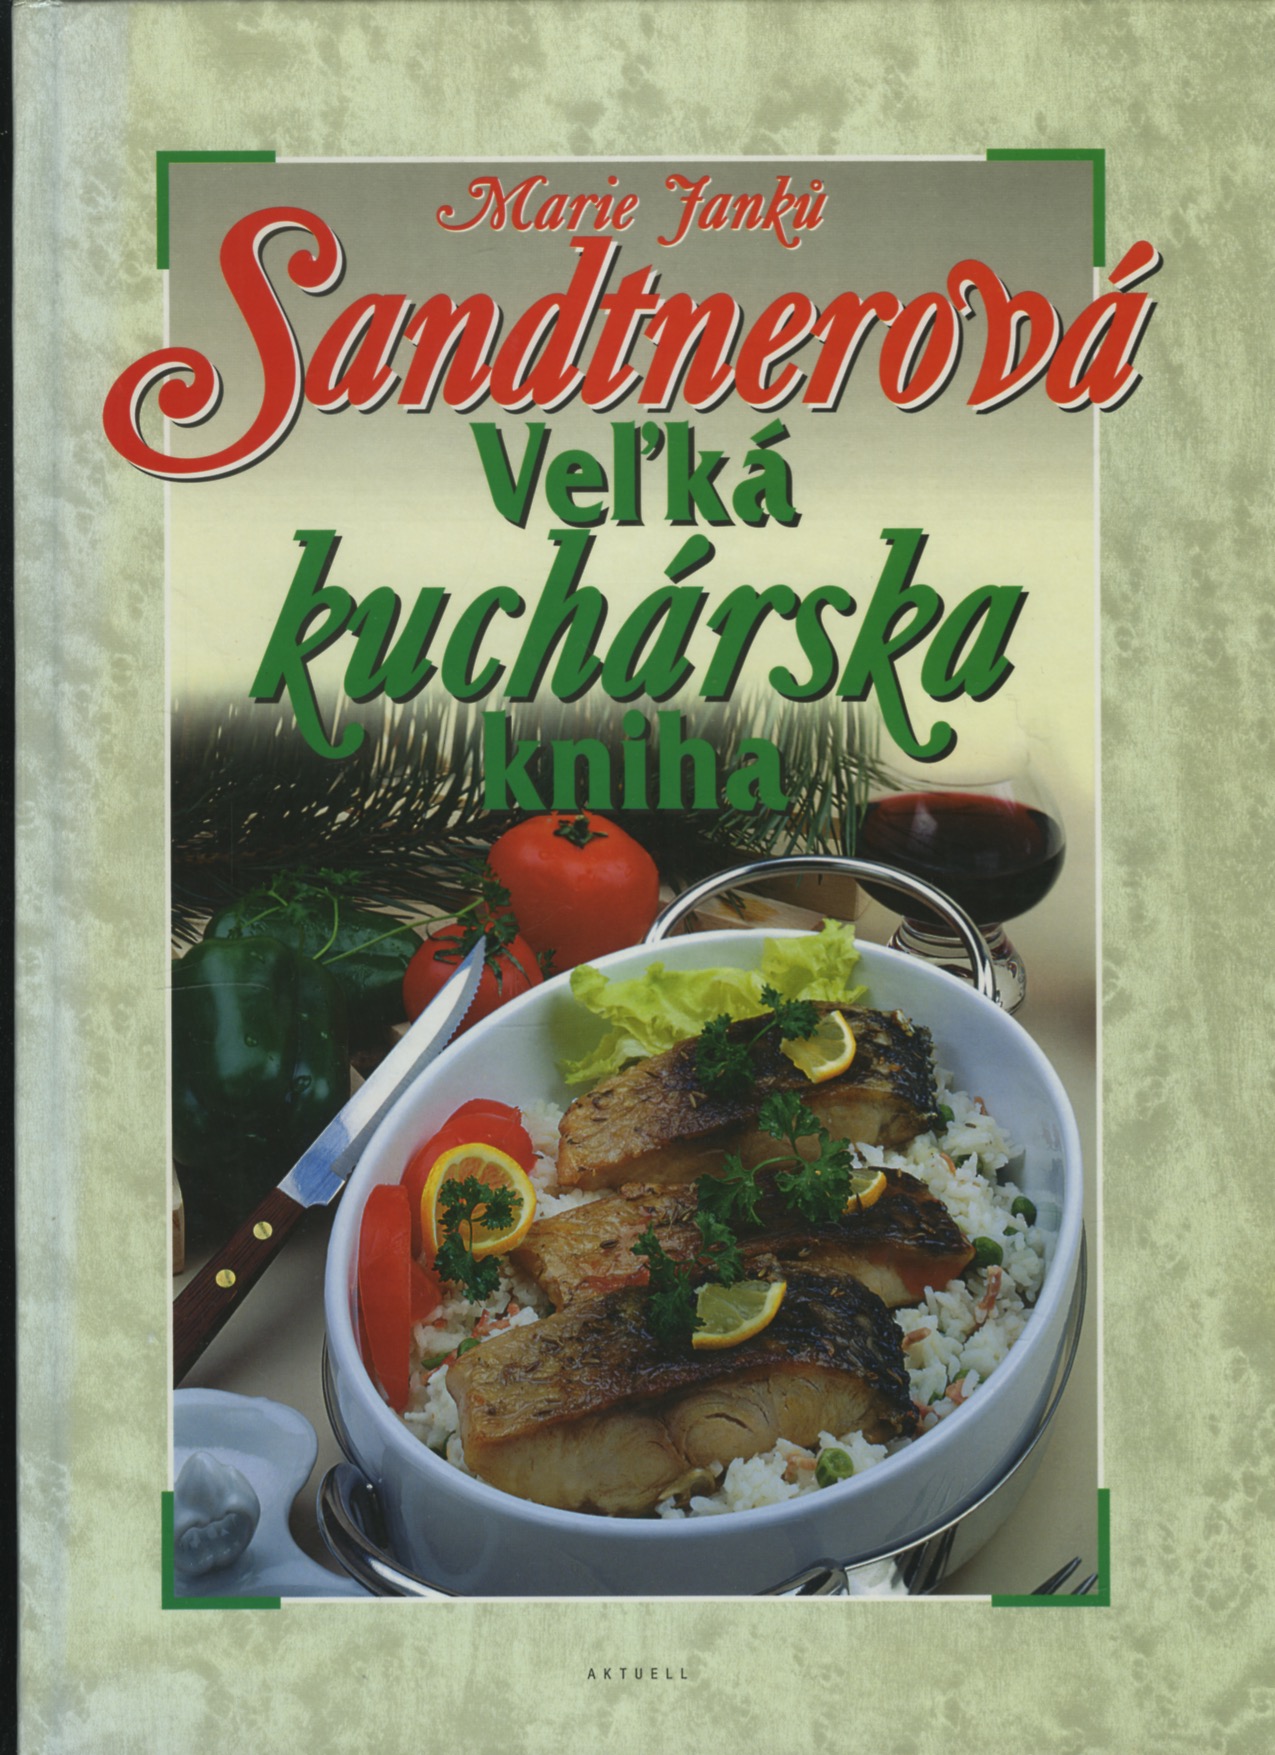 Velká kuchařská kniha (Marie Janků Sandtnerová)